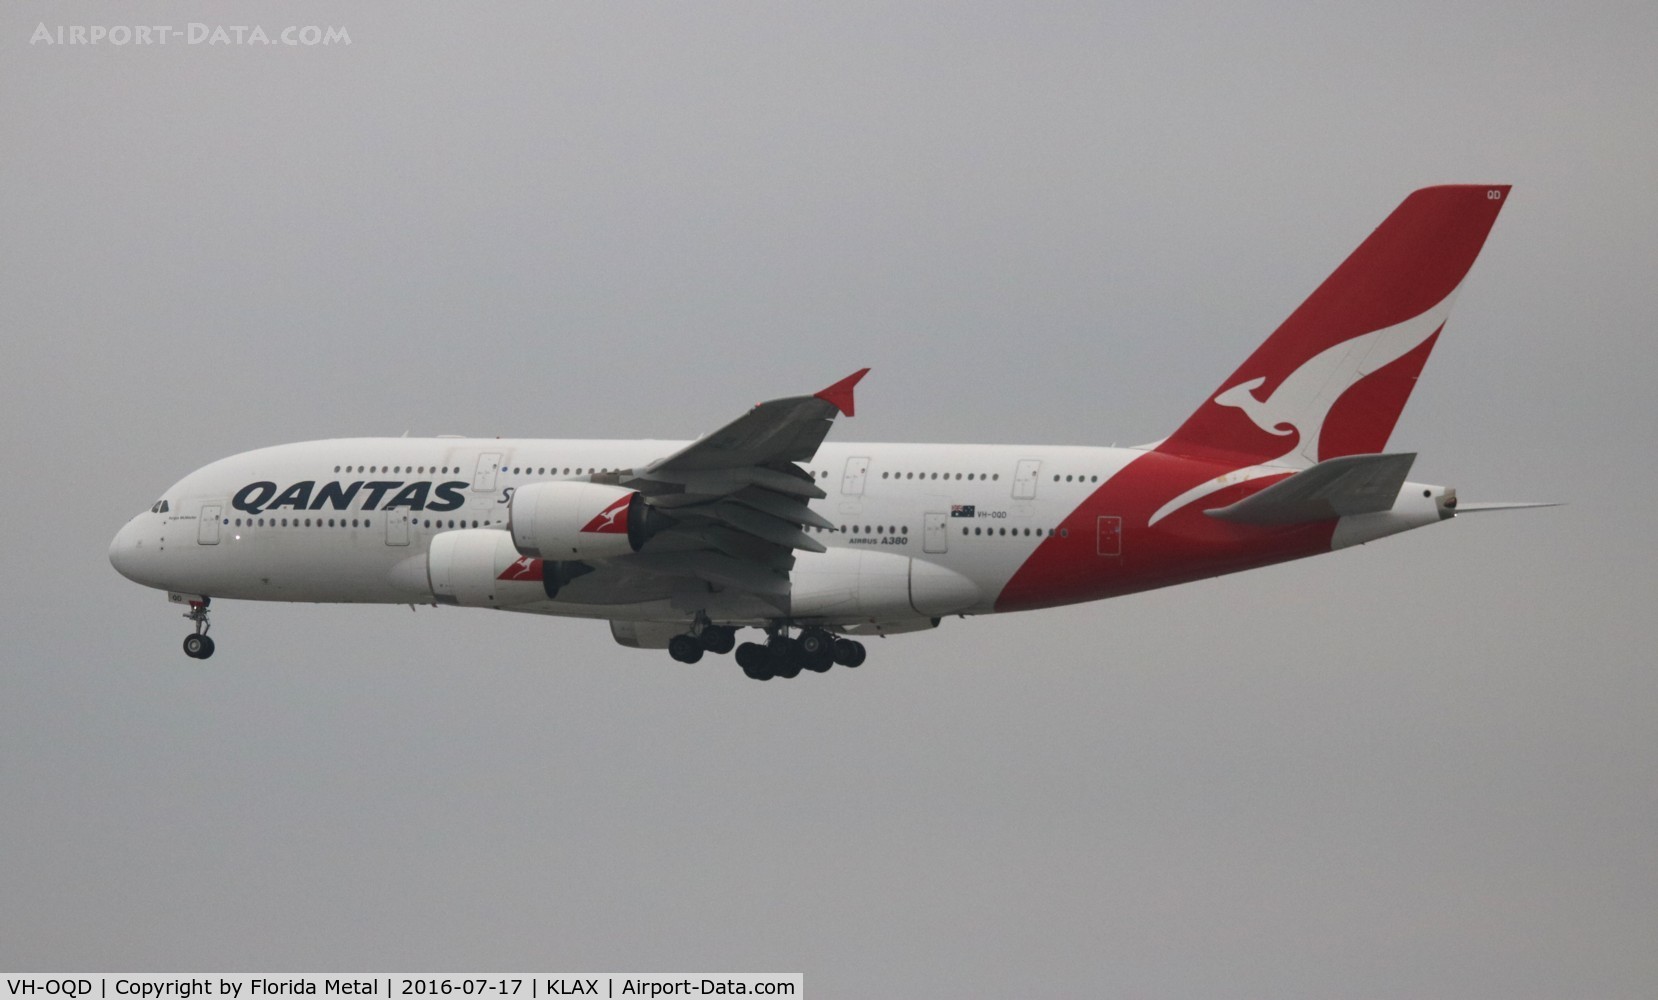 VH-OQD, 2008 Airbus A380-842 C/N 026, Qantas A380